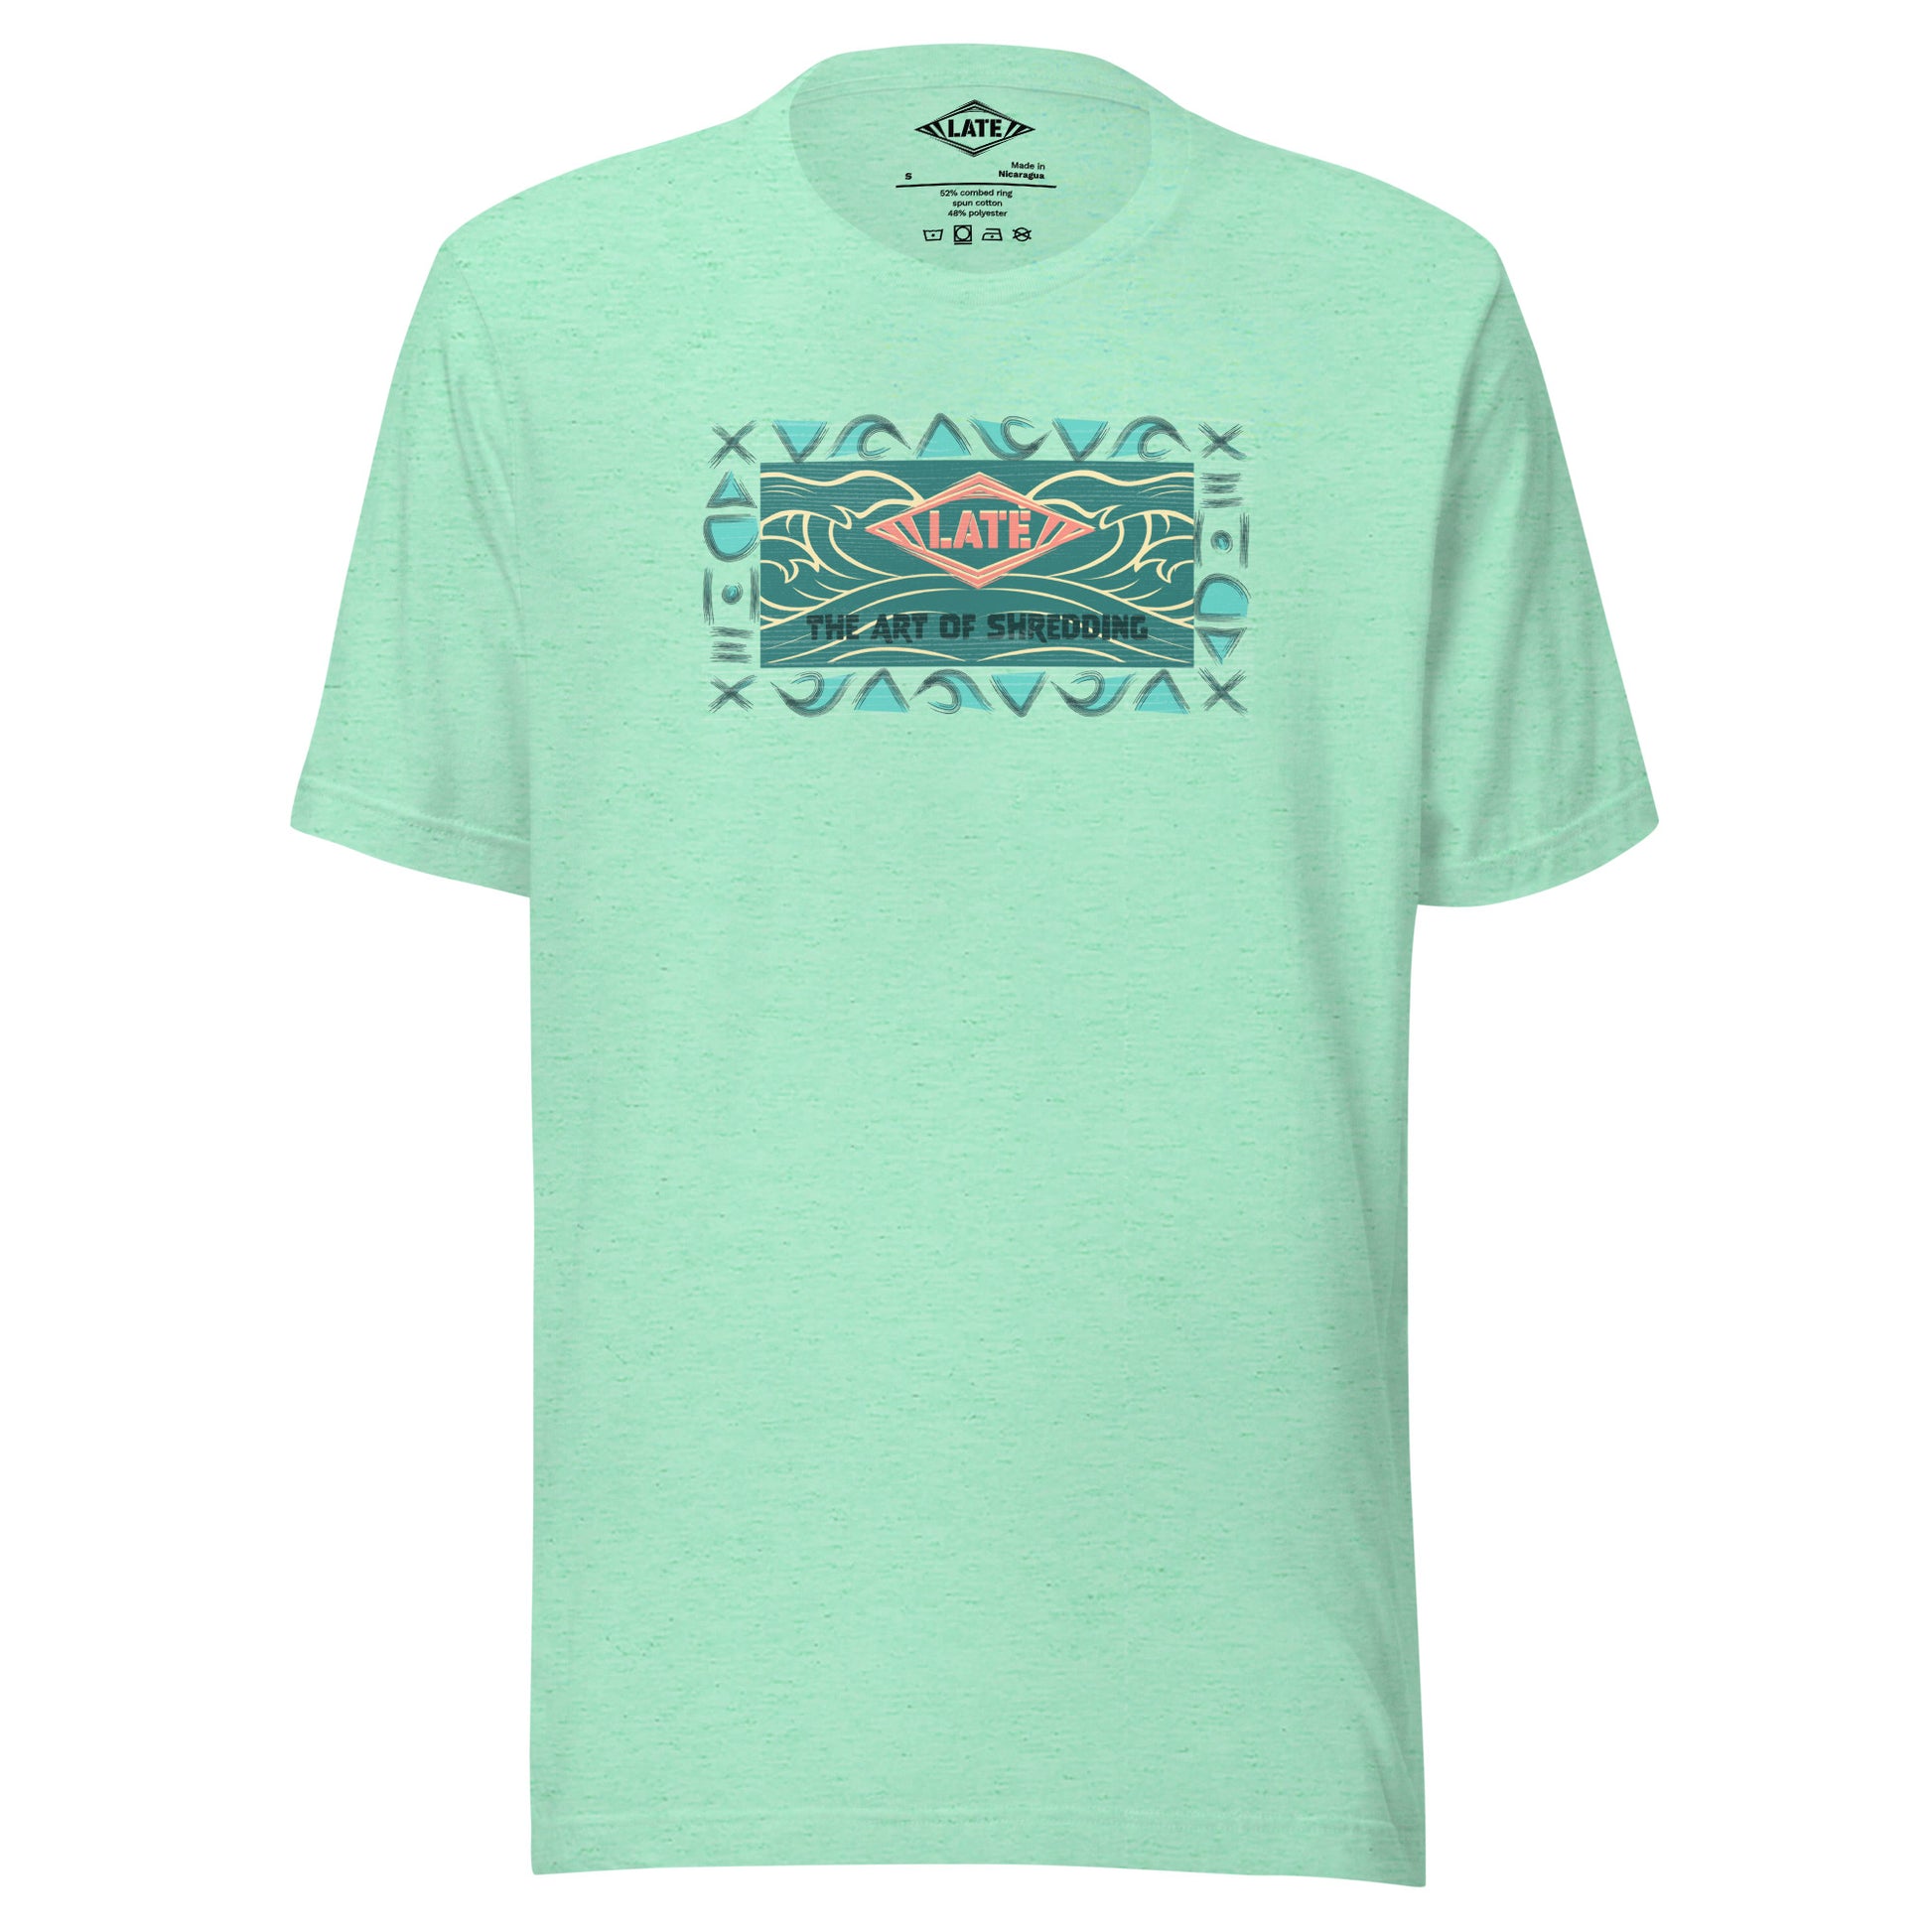 T-Shirt rétro surfwear art of shredding, logo Late surfshop motifs de vagues creuses, et dom-tom, t-shirt unisex vert menthe